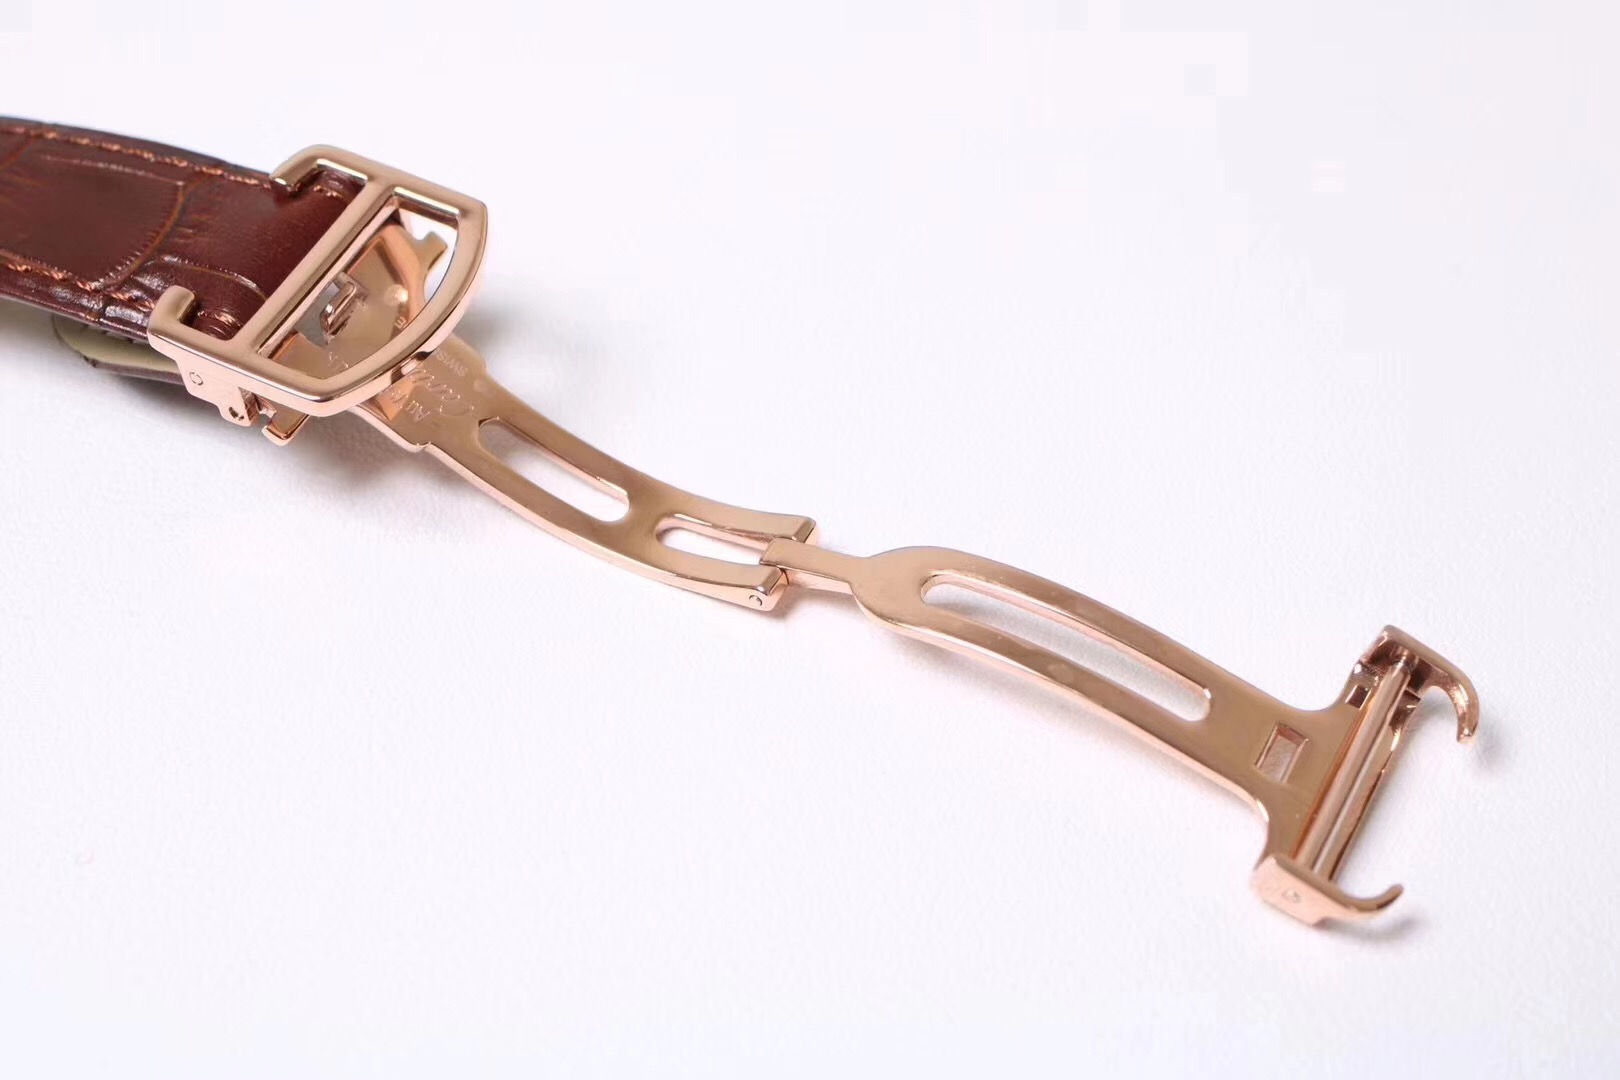 正品刻模高仿卡地亞鑰匙繫列WGCL0019玫瑰金男士機械皮帶手錶￥3580元-高仿卡地亞